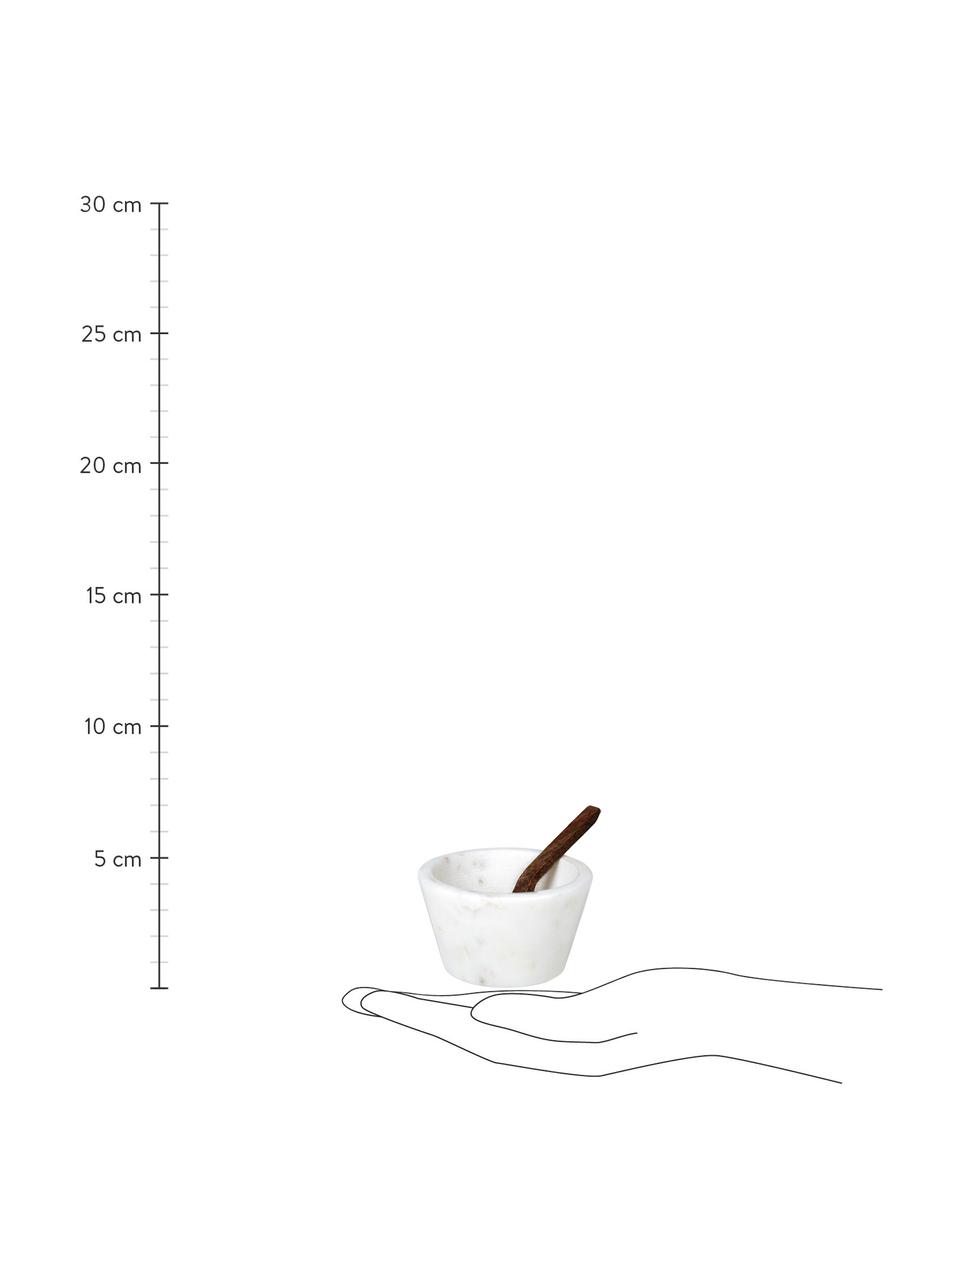 Miska z marmuru do soli Marble, Biały marmurowy, drewno sheesham, Ø 7 x W 4 cm